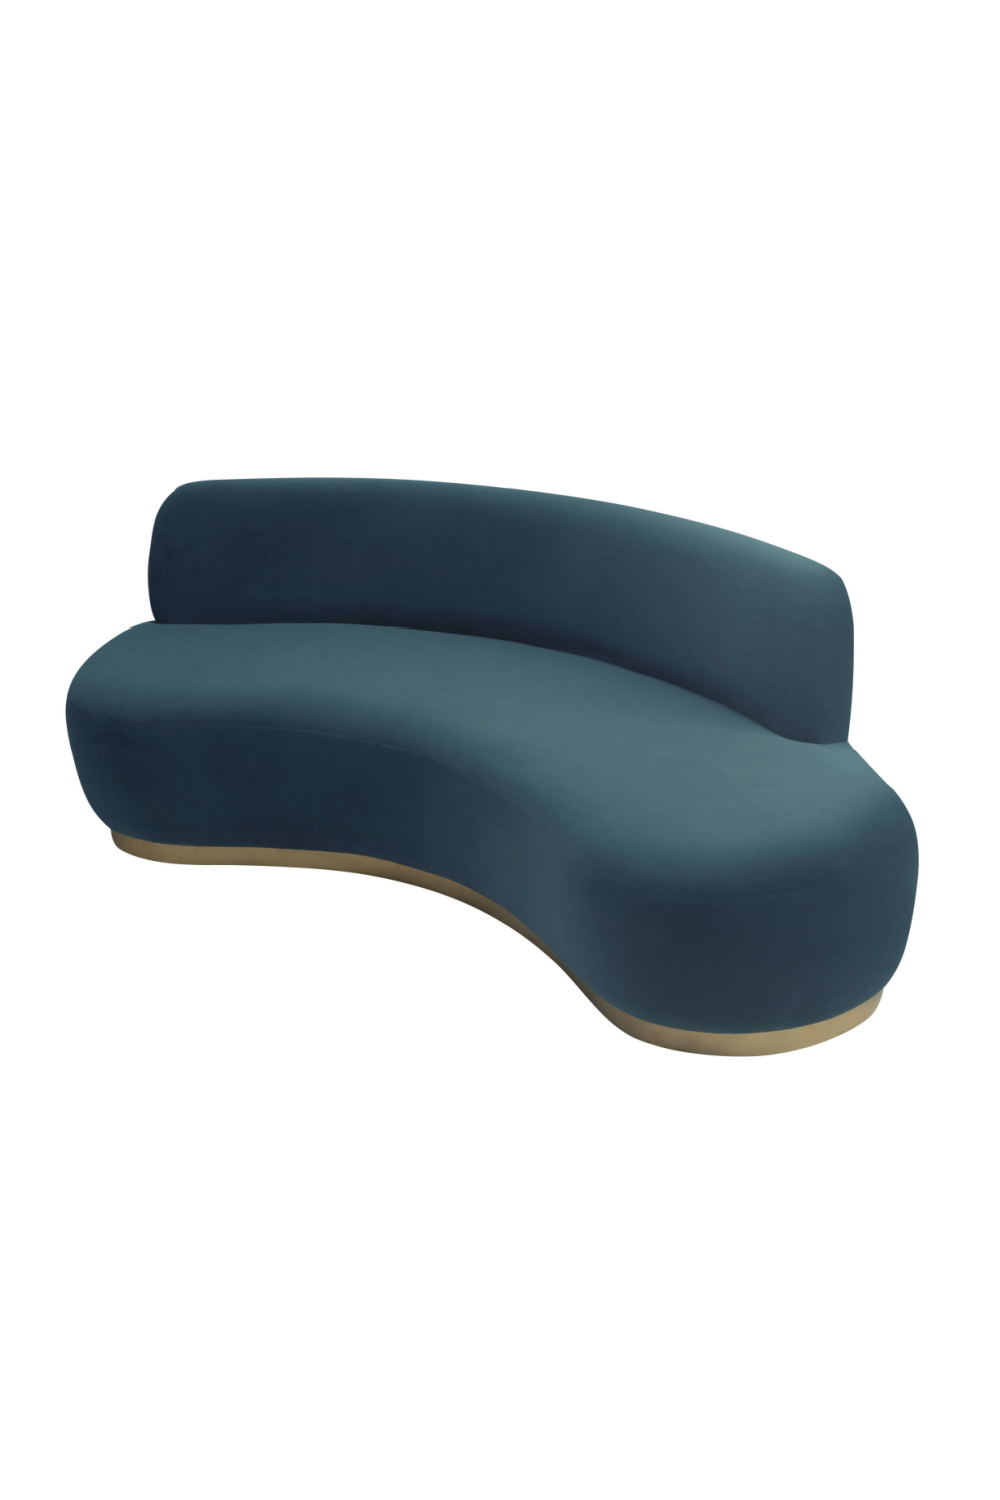 Curved Contemporary Sofa | Liang & Eimil Sasha | Oroa.com